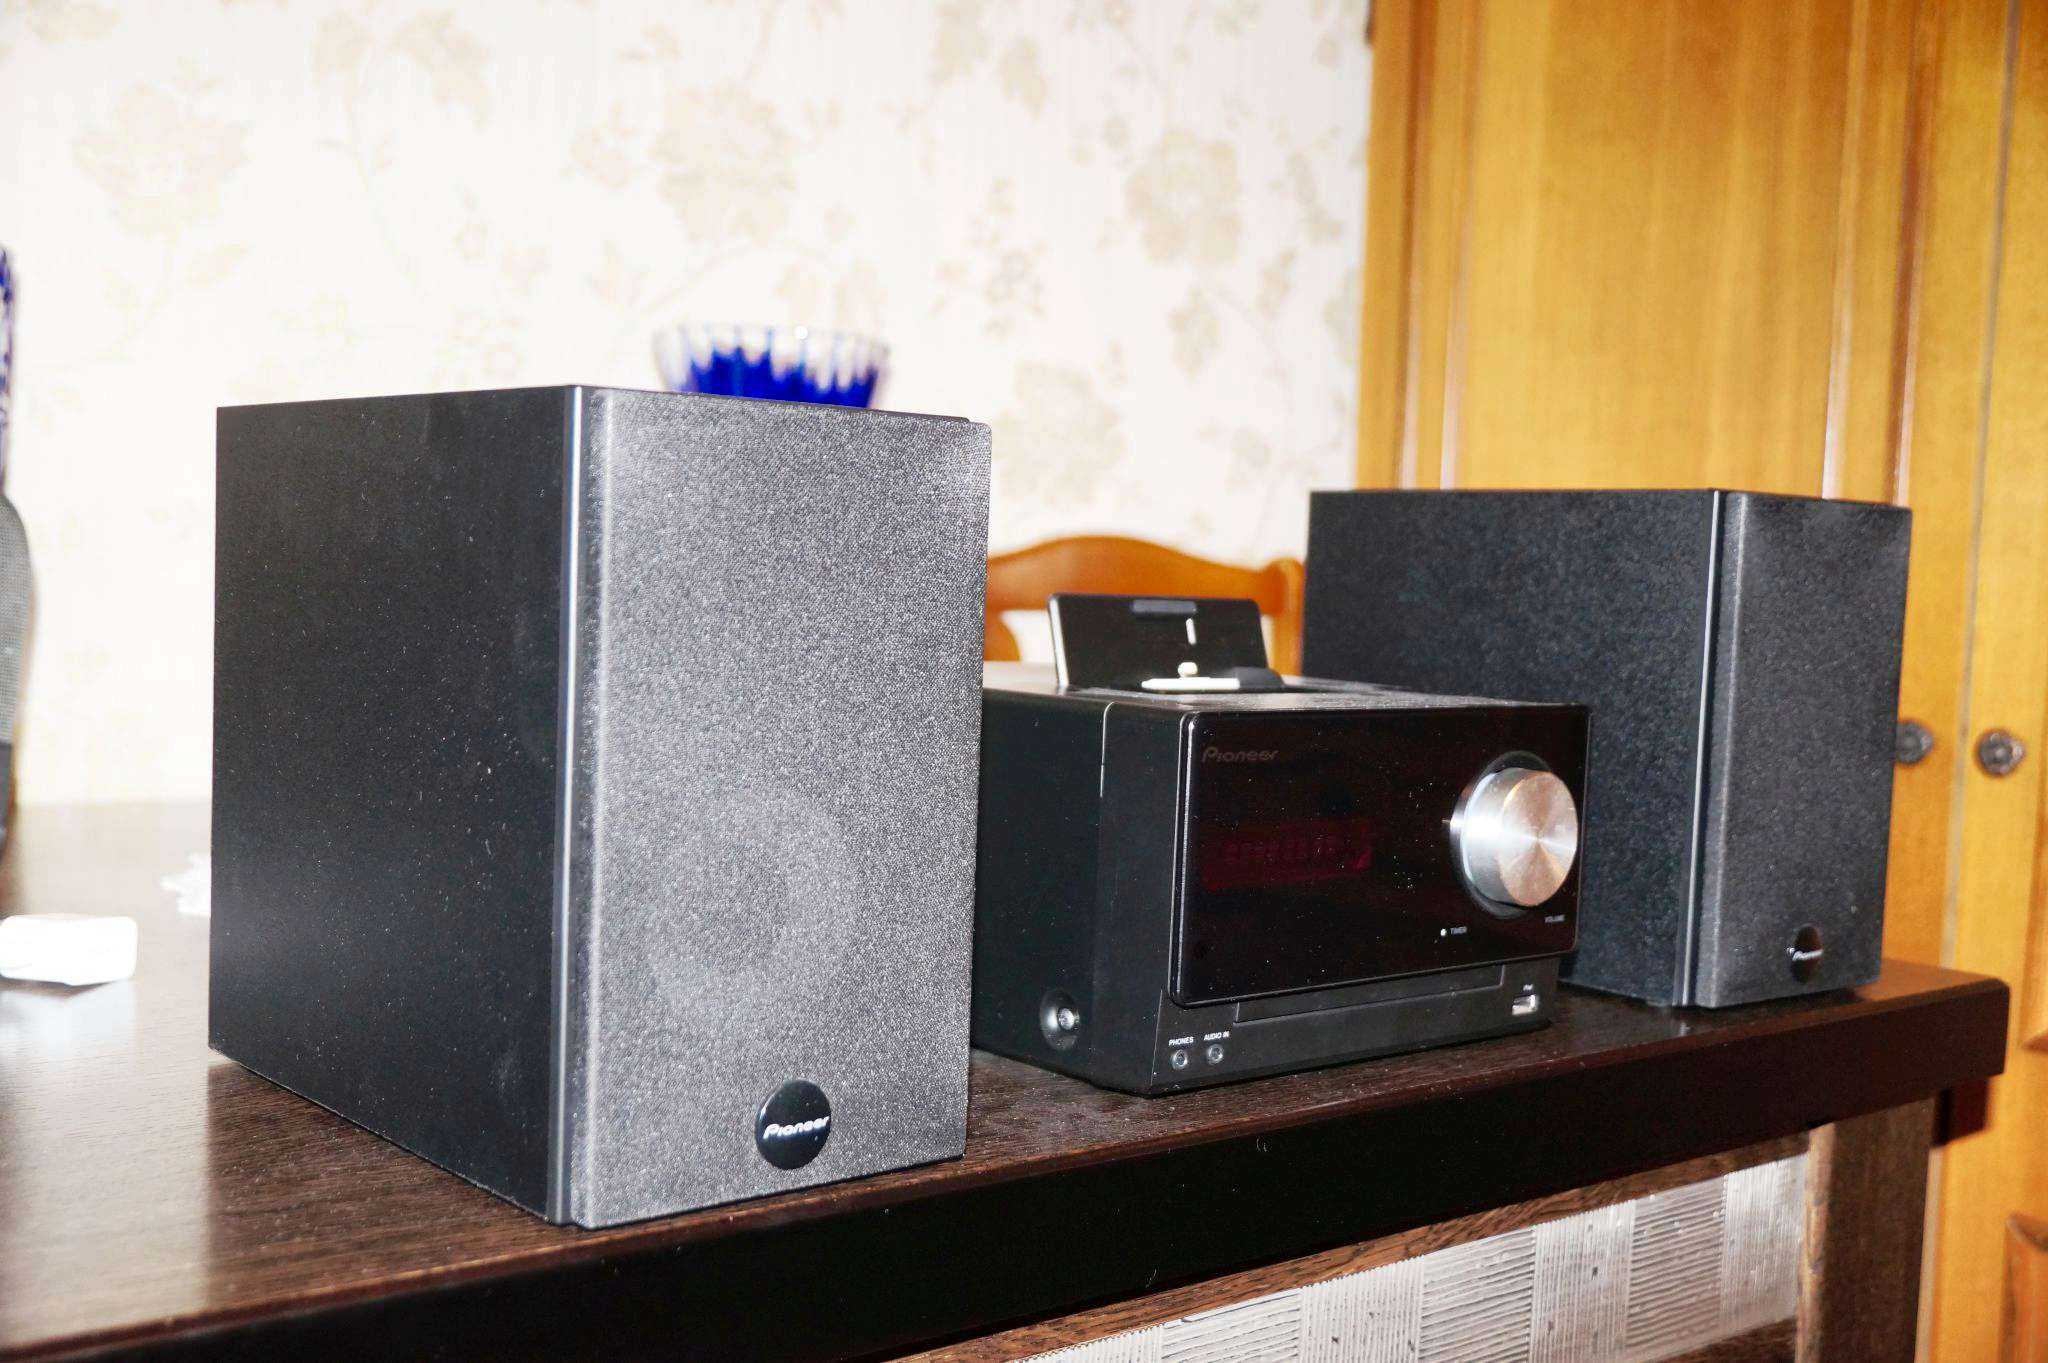 Обзор звуковых микросистем pioneer x-smc11-s и x-hm51-k. универсальная акустика для ios-устройств